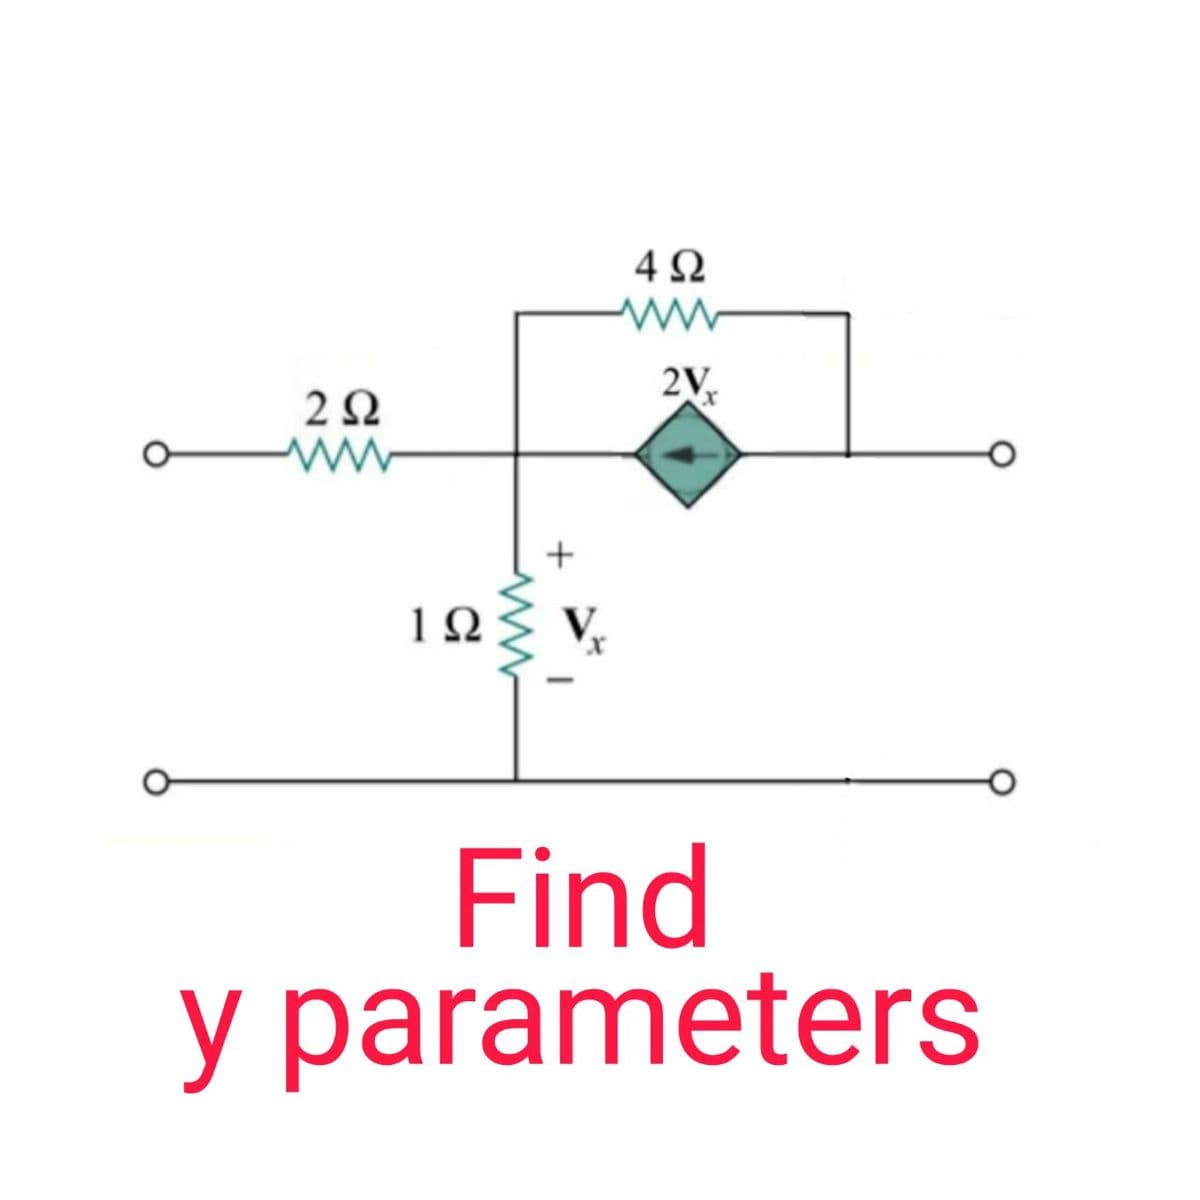 4Ω
V.
Find
y parameters
